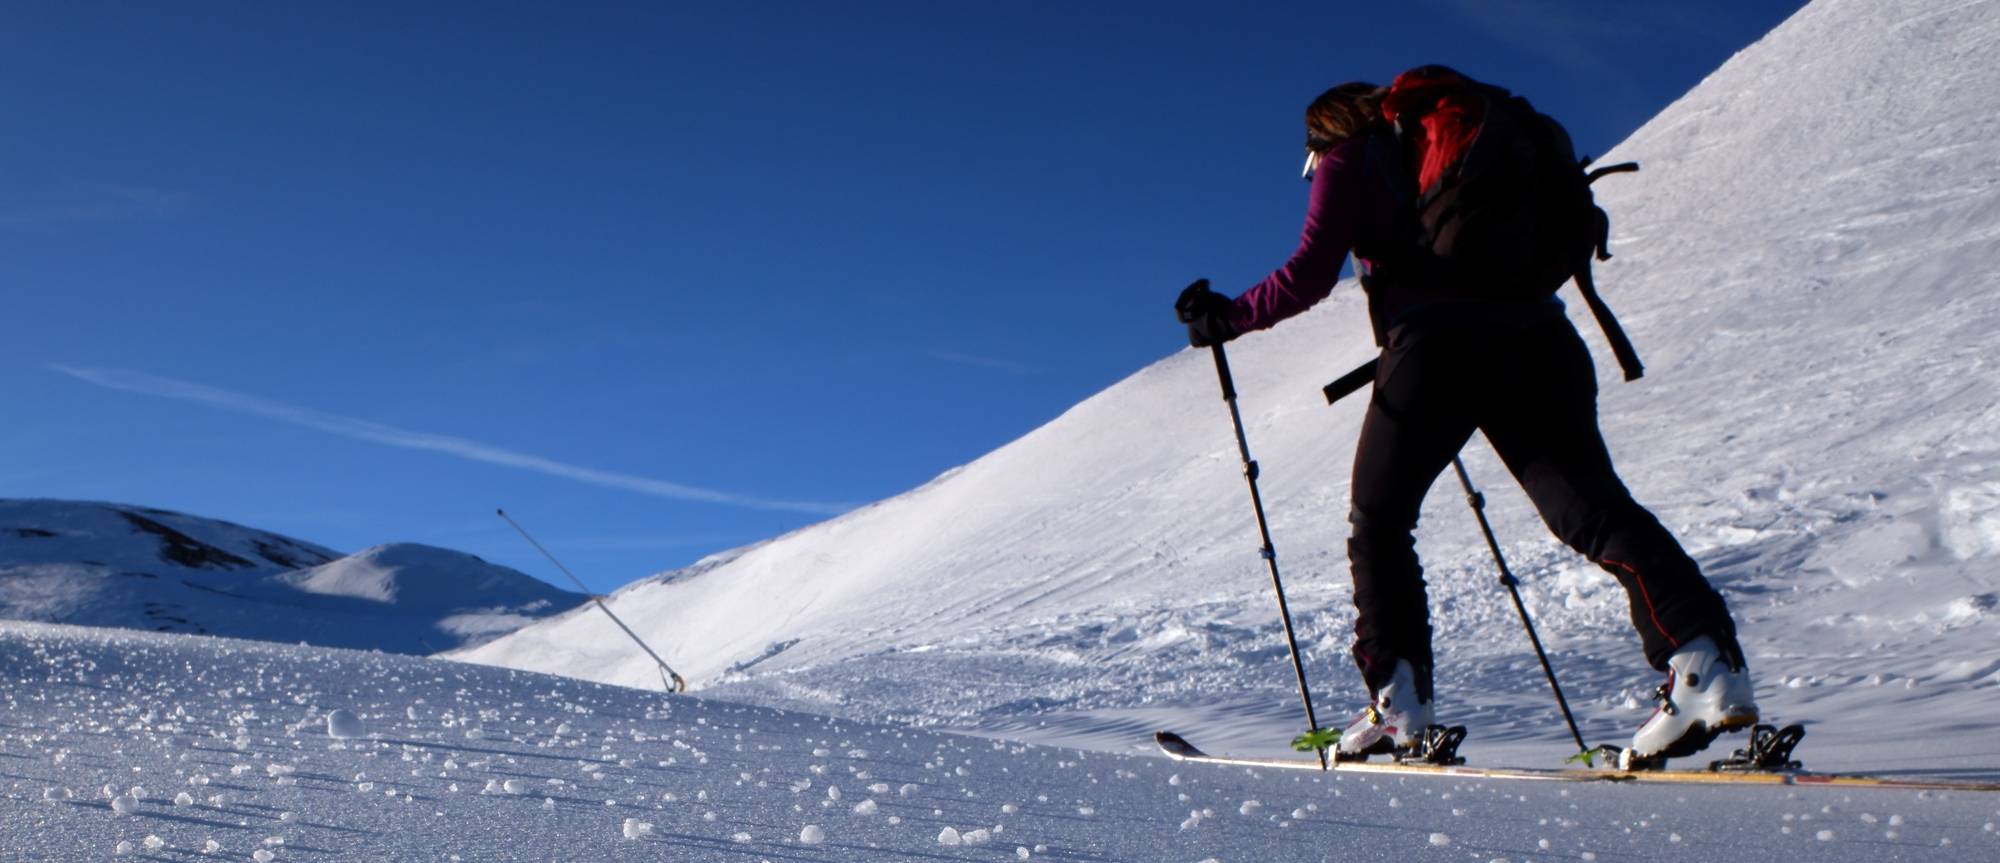 Skitourengeherin am Skipistenrand bei Sonnenschein